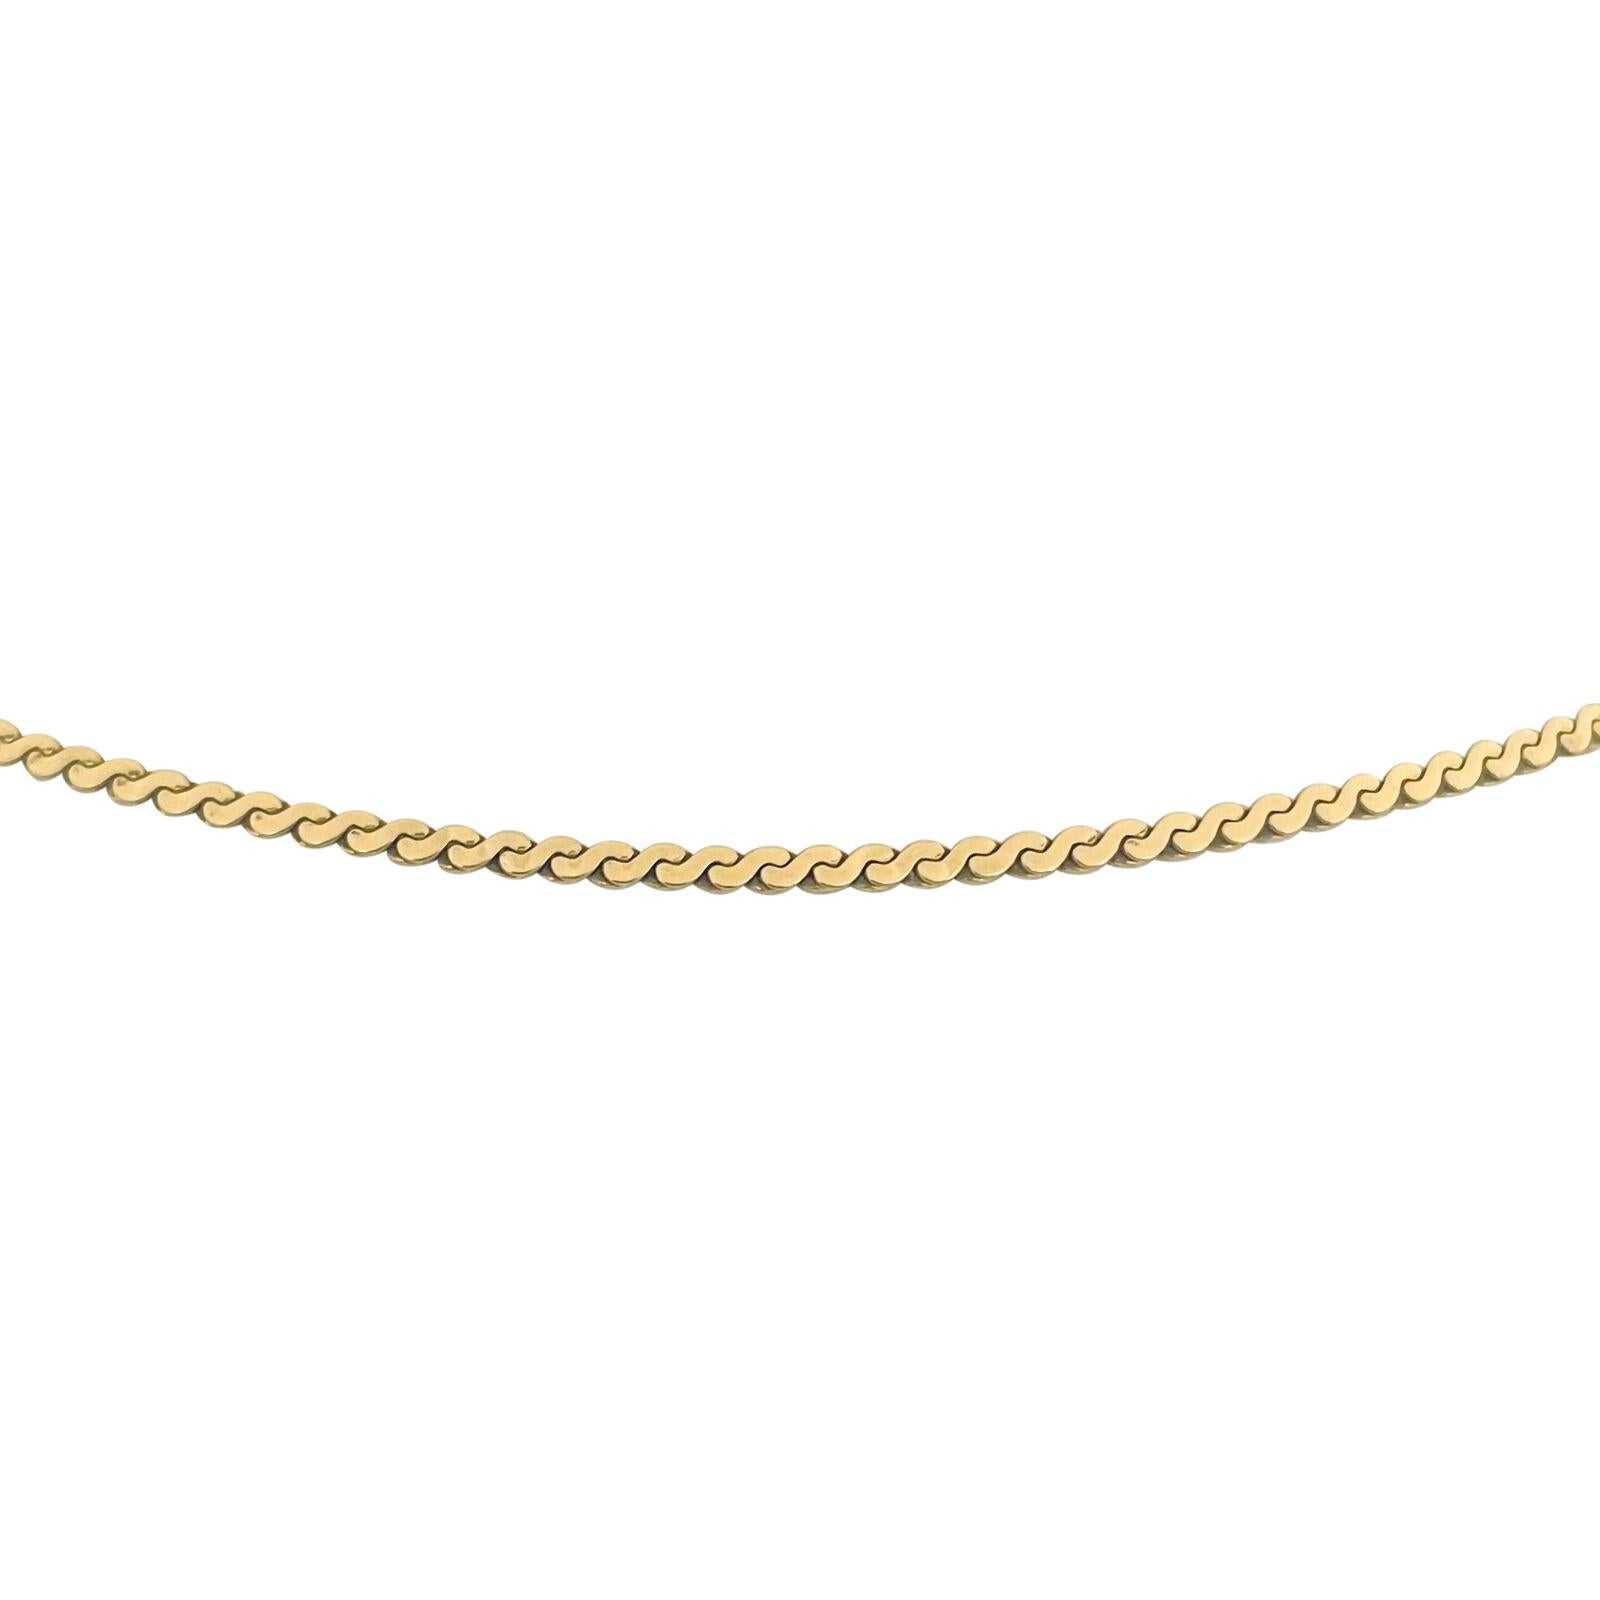 serpentine necklace